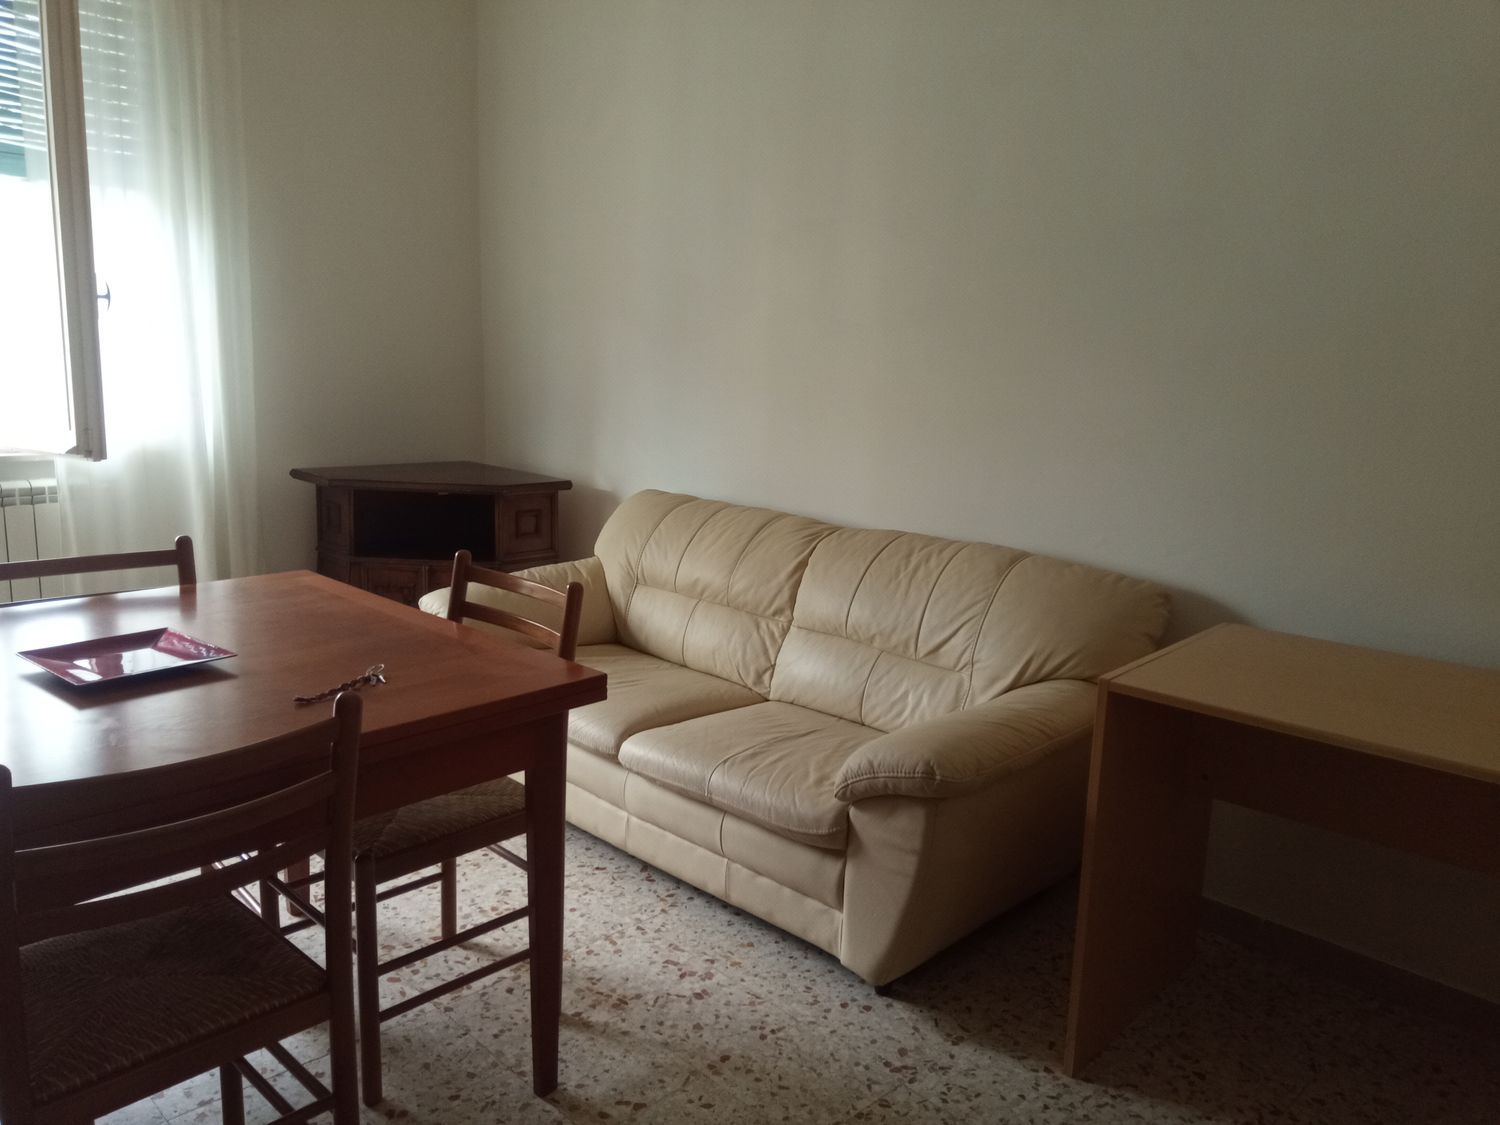 Appartamento in affitto a Montesilvano, 3 locali, prezzo € 500 | PortaleAgenzieImmobiliari.it